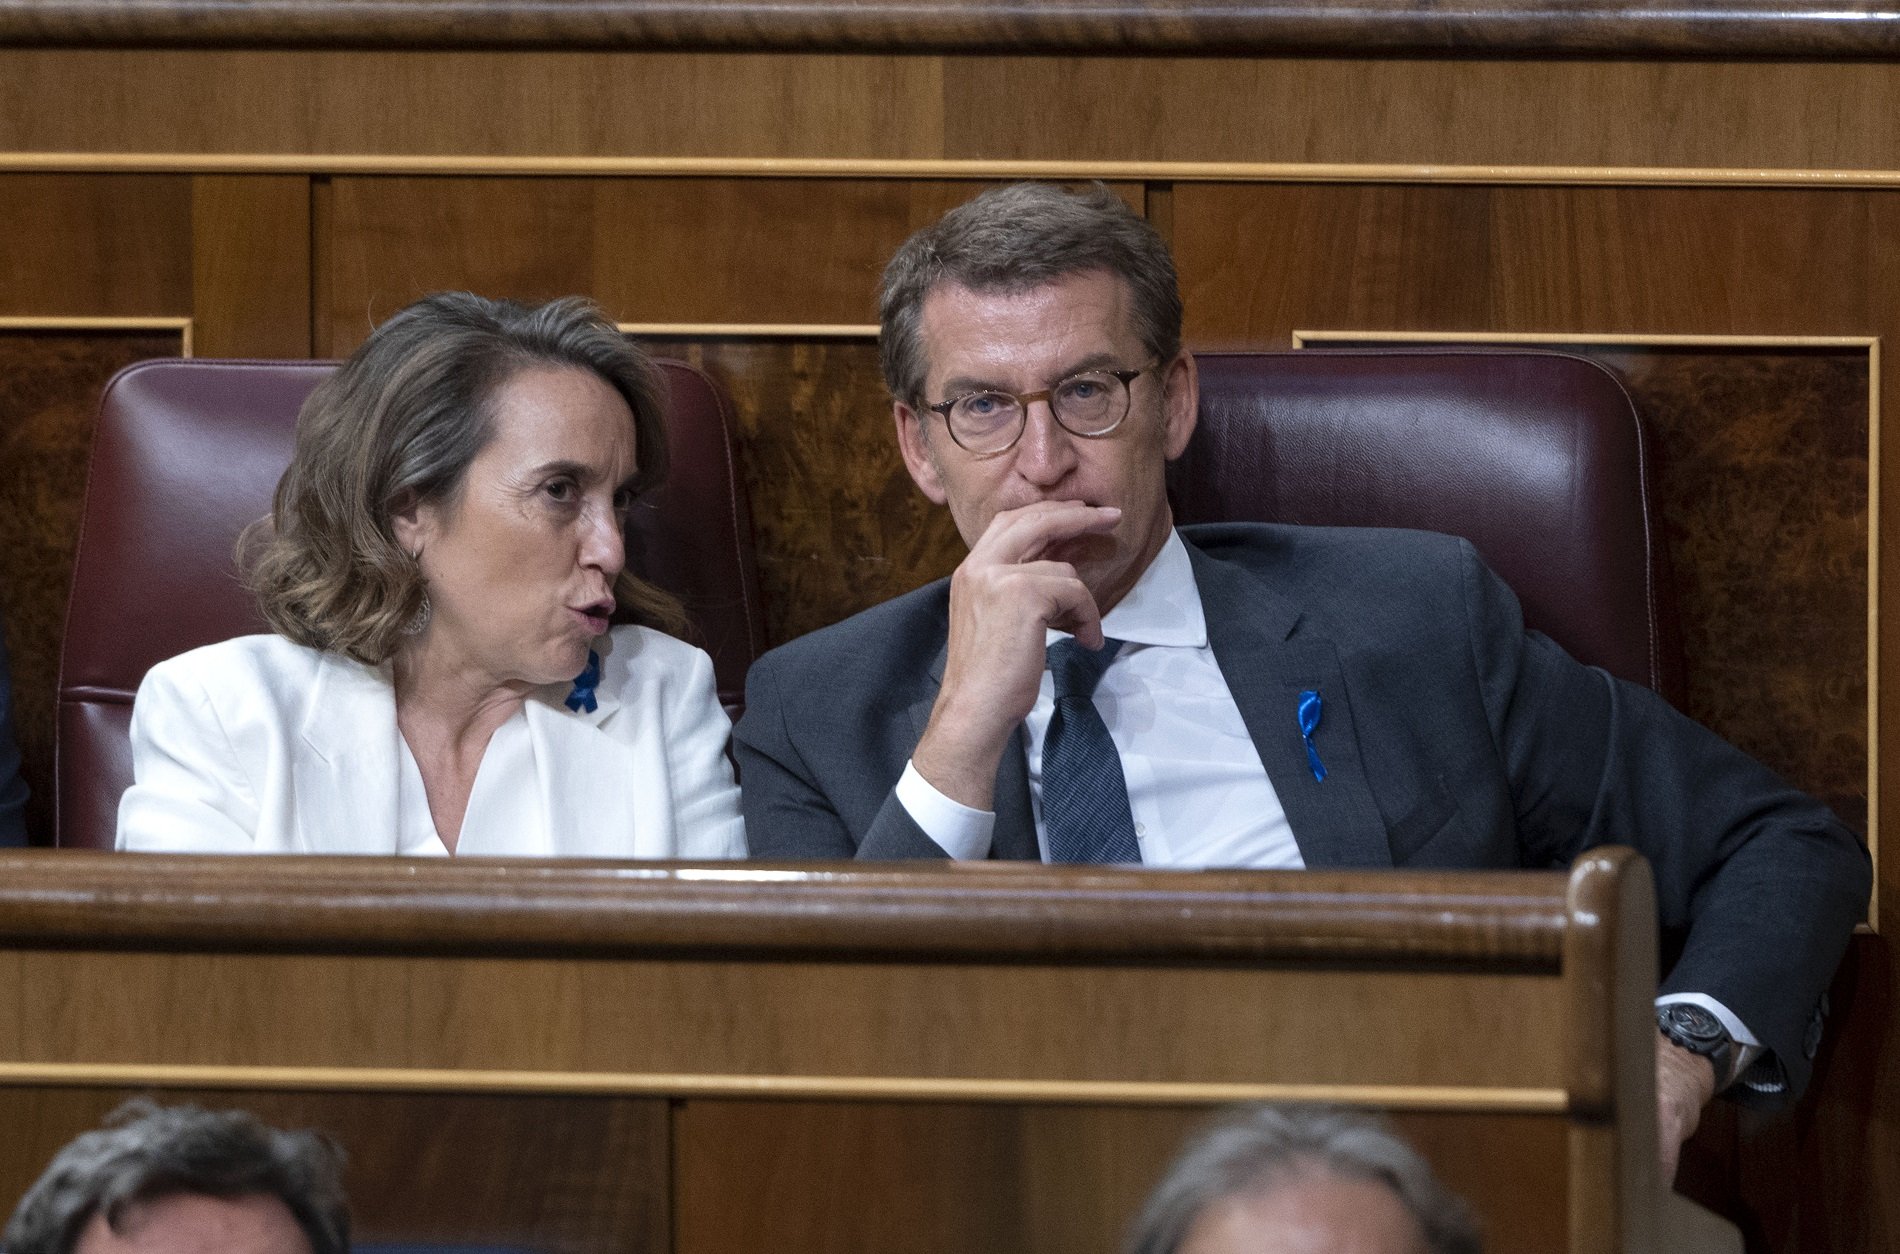 El PP, davant la proposta de Pedro Sánchez: "A cap país europeu tocarien la sedició amb els sediciosos"